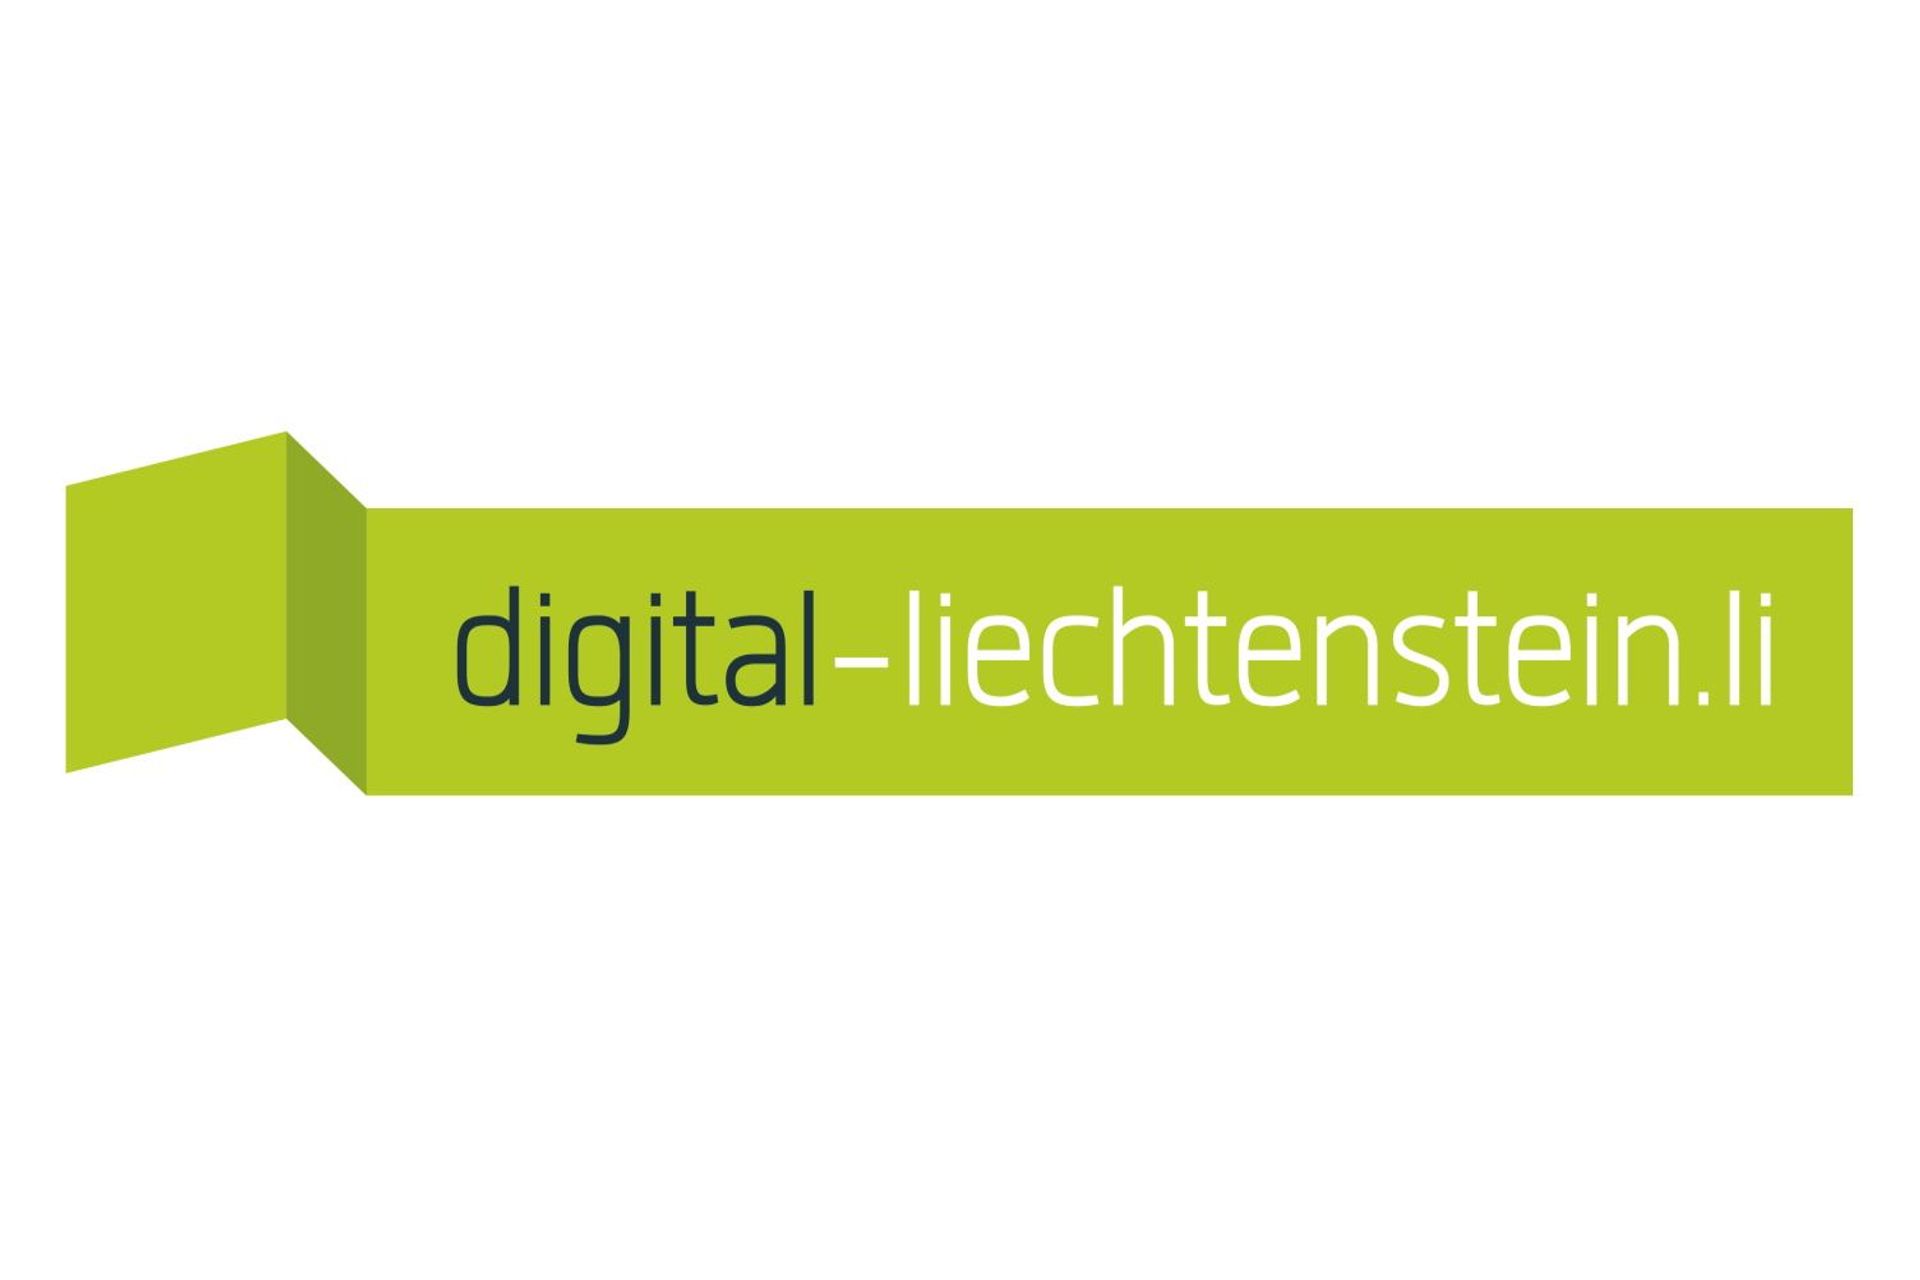 Il logotipo dell'iniziativa Digital Liechtenstein